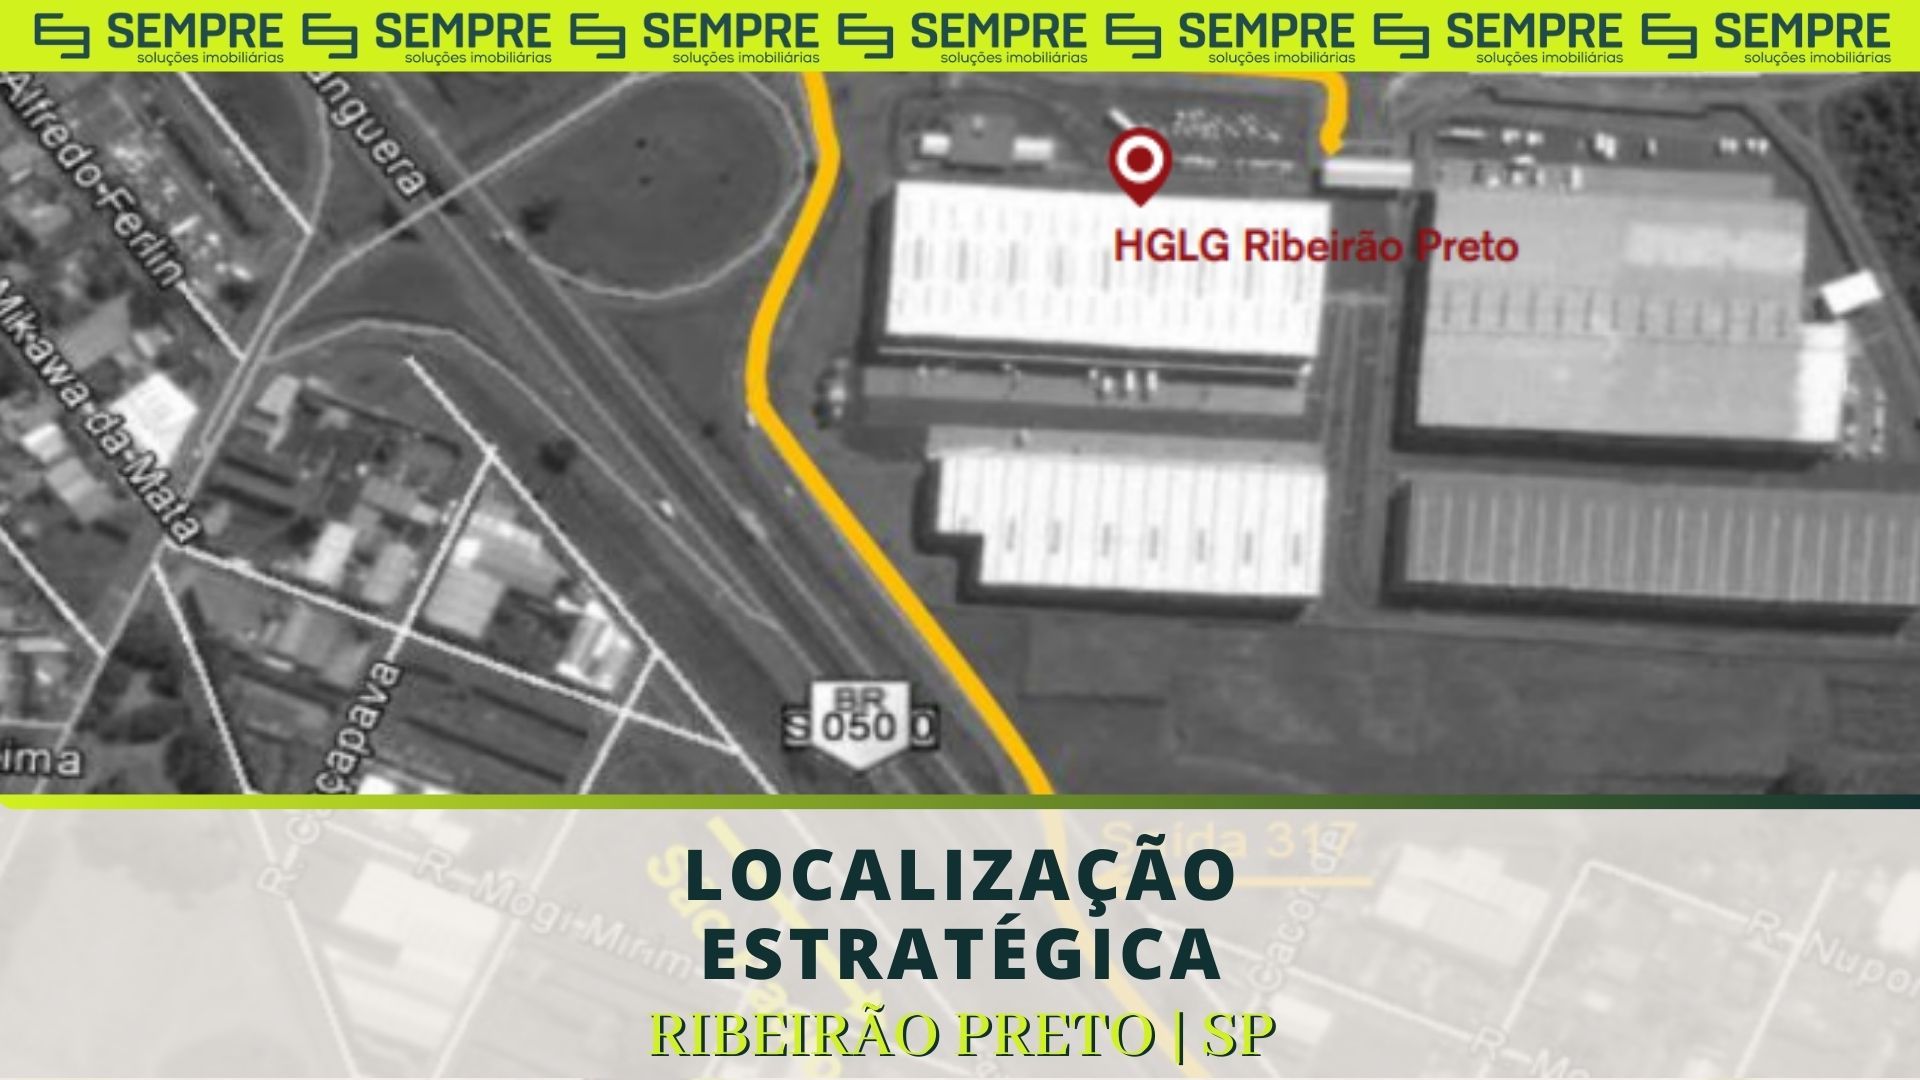 HGLG - RIBEIRÃO PRETO - Comércio e indústria - Jardim Salgado Filho,  Ribeirão Preto 1250583662